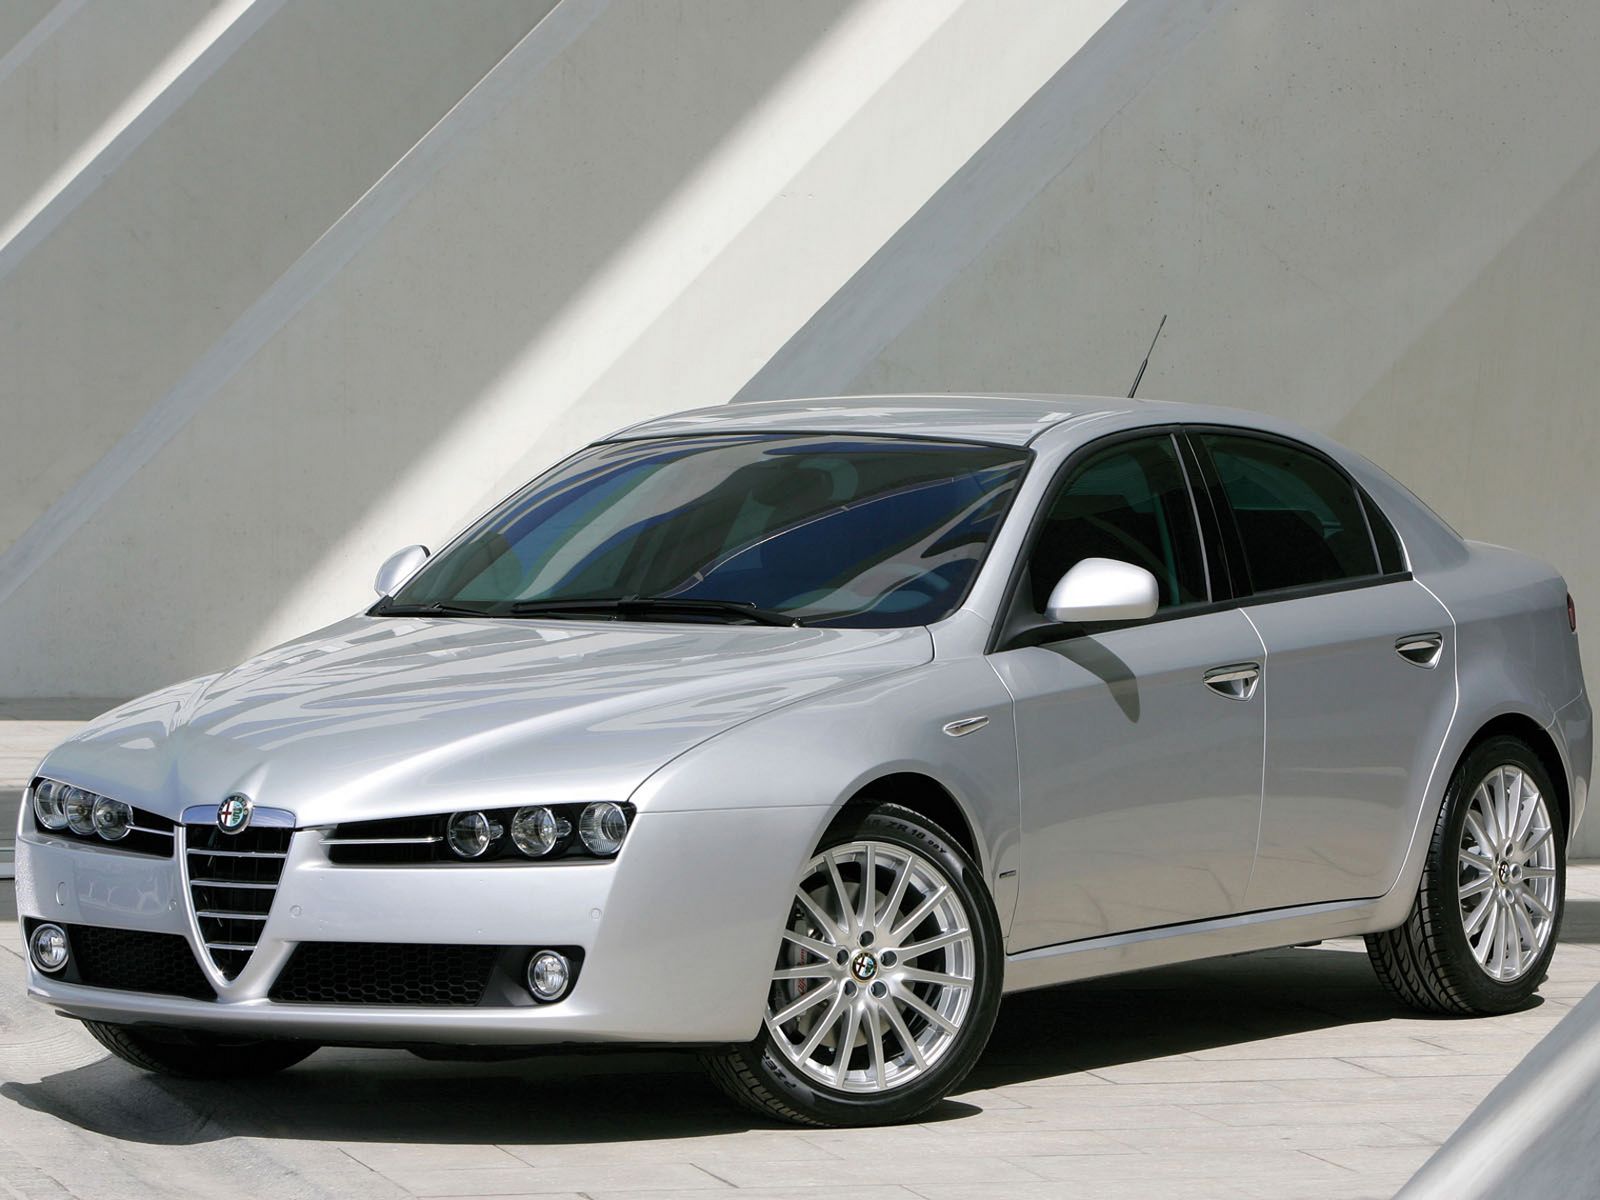 The new Alfa Romeo 'family feeling' stemmed from the Brera prototype